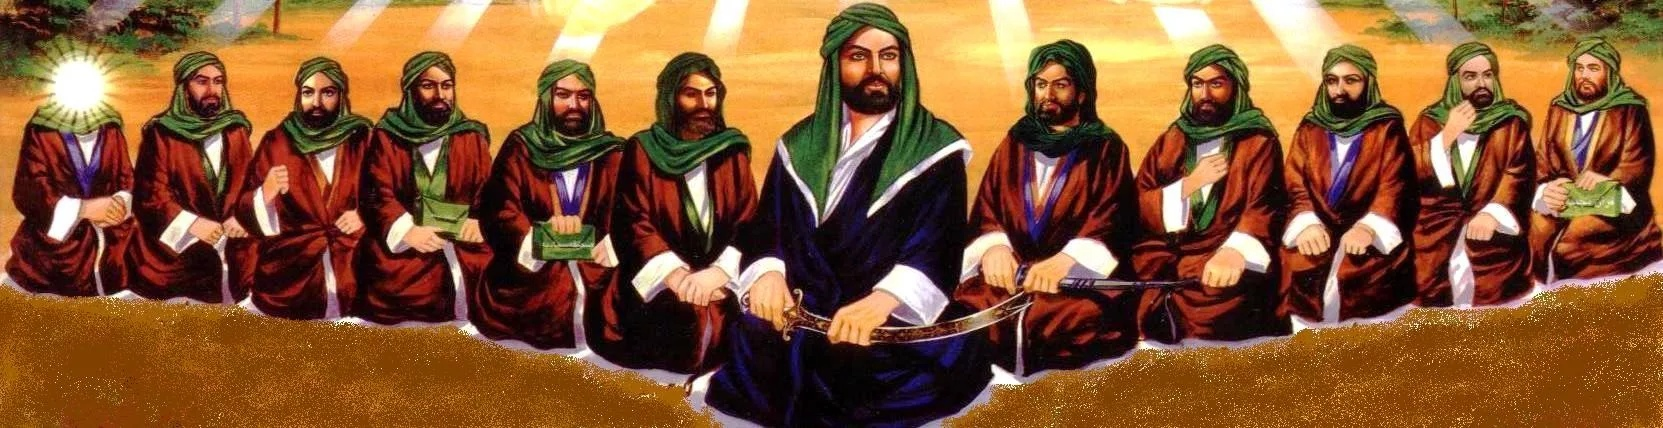 Имам шиитов. Hz Ali 12imam. Мухаммед пророк 12 имамов. 12 Имамов шиитов.